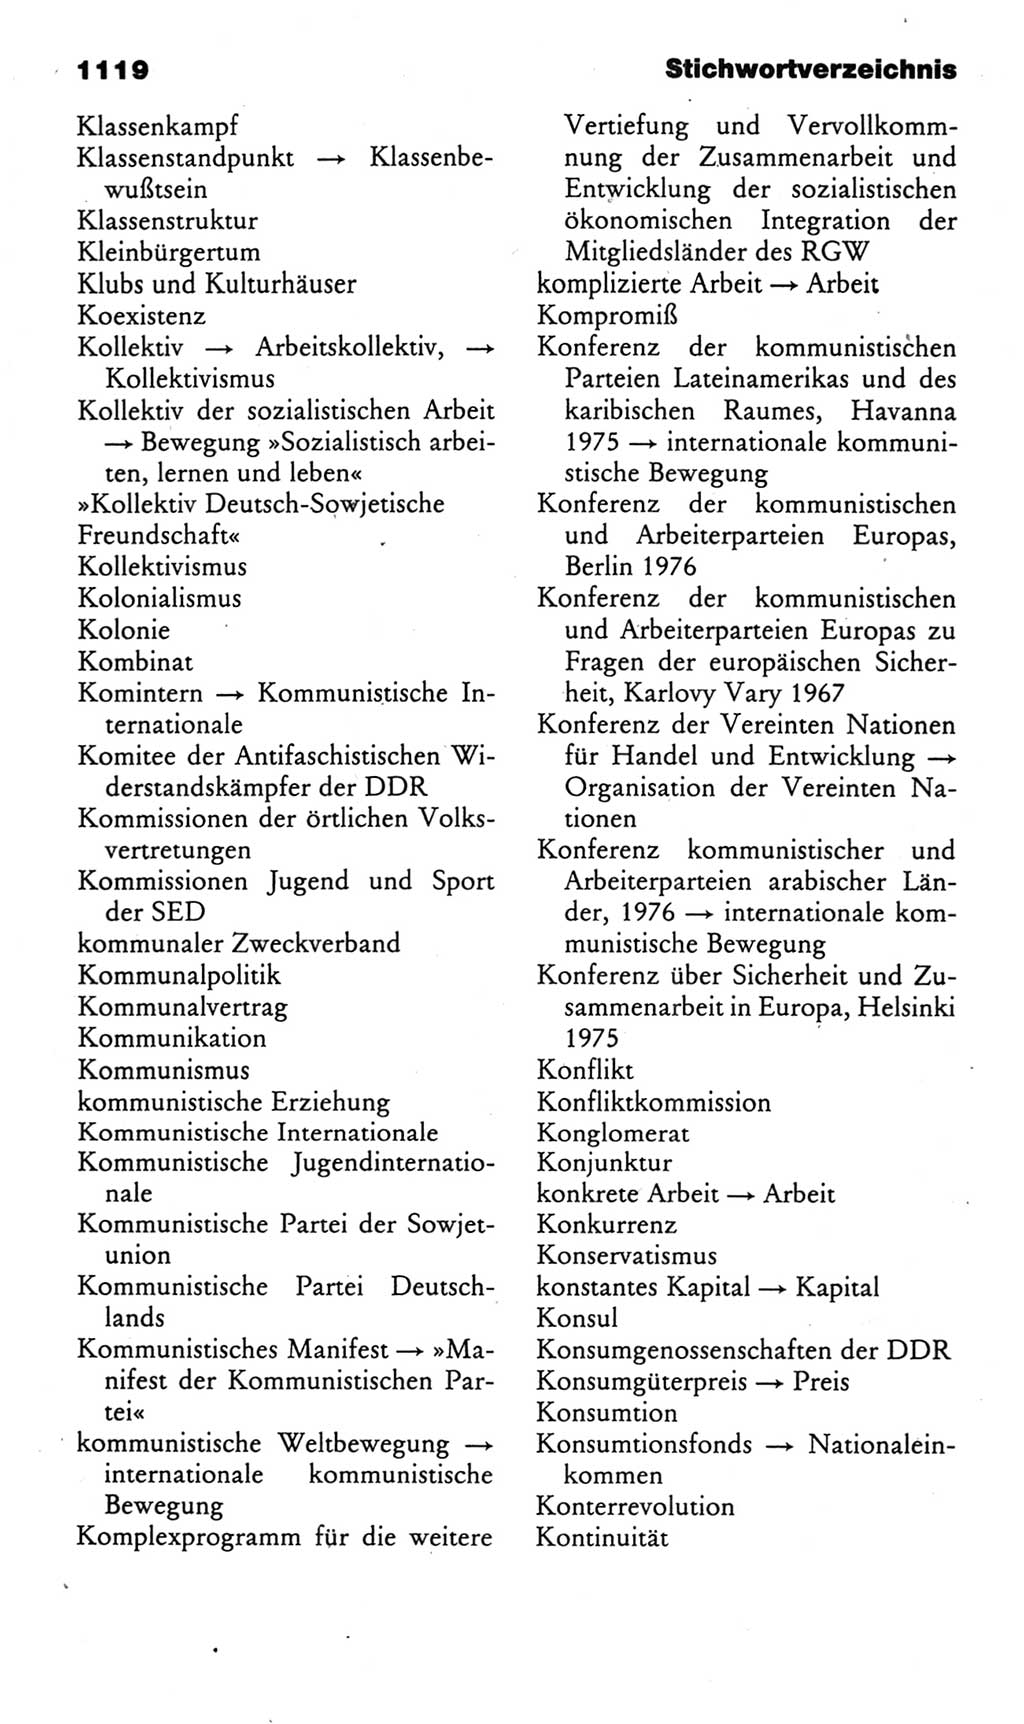 Kleines politisches Wörterbuch [Deutsche Demokratische Republik (DDR)] 1985, Seite 1119 (Kl. pol. Wb. DDR 1985, S. 1119)